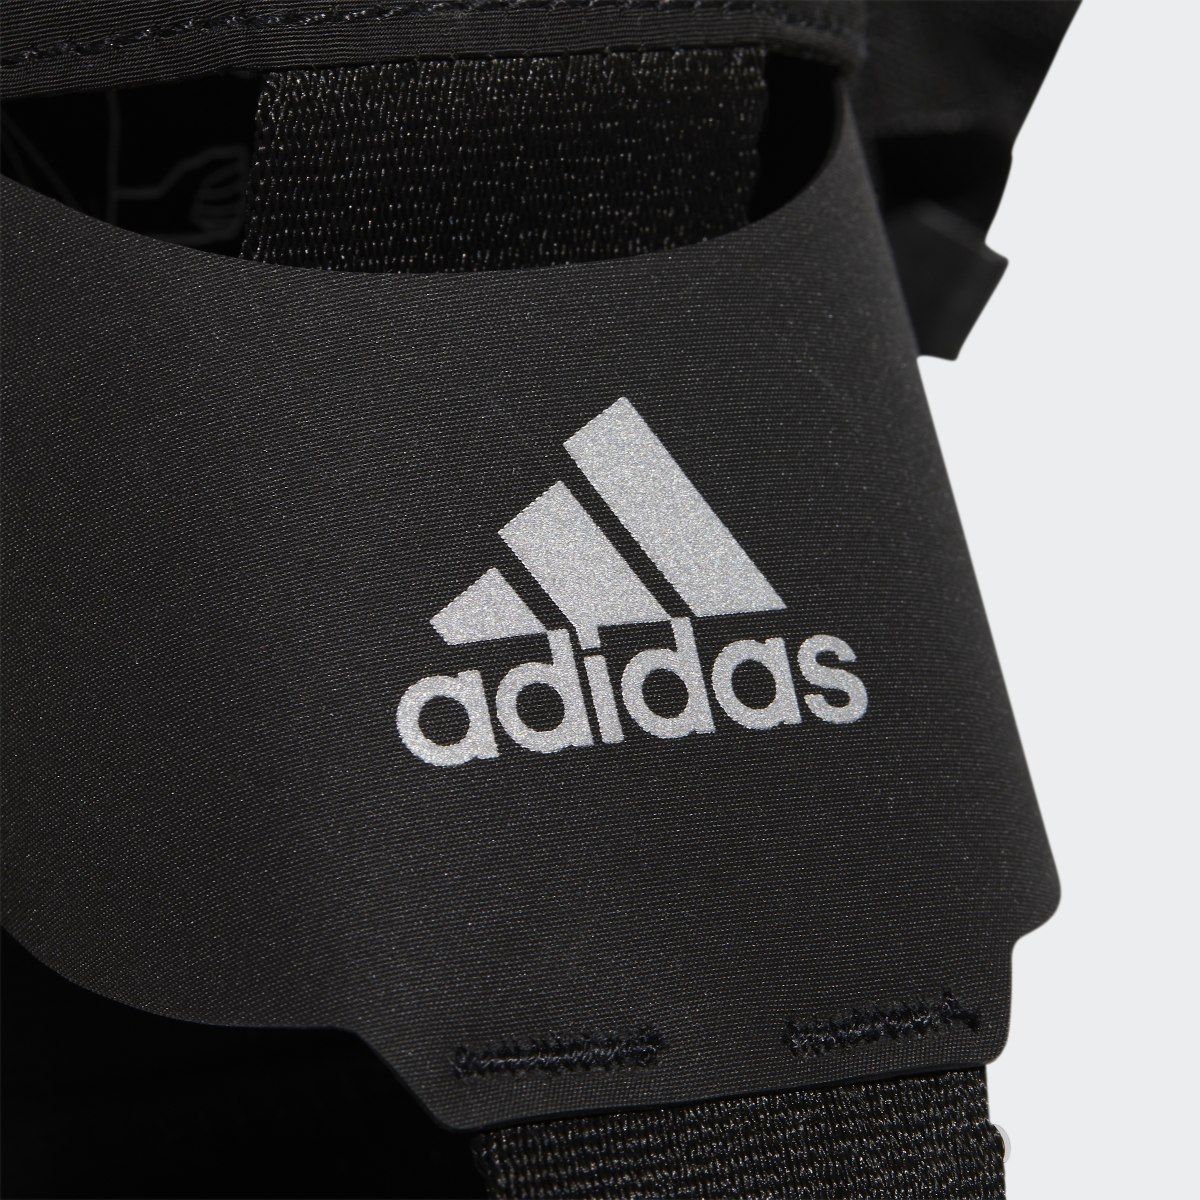 Adidas Running Gear Bottle Bag. 7